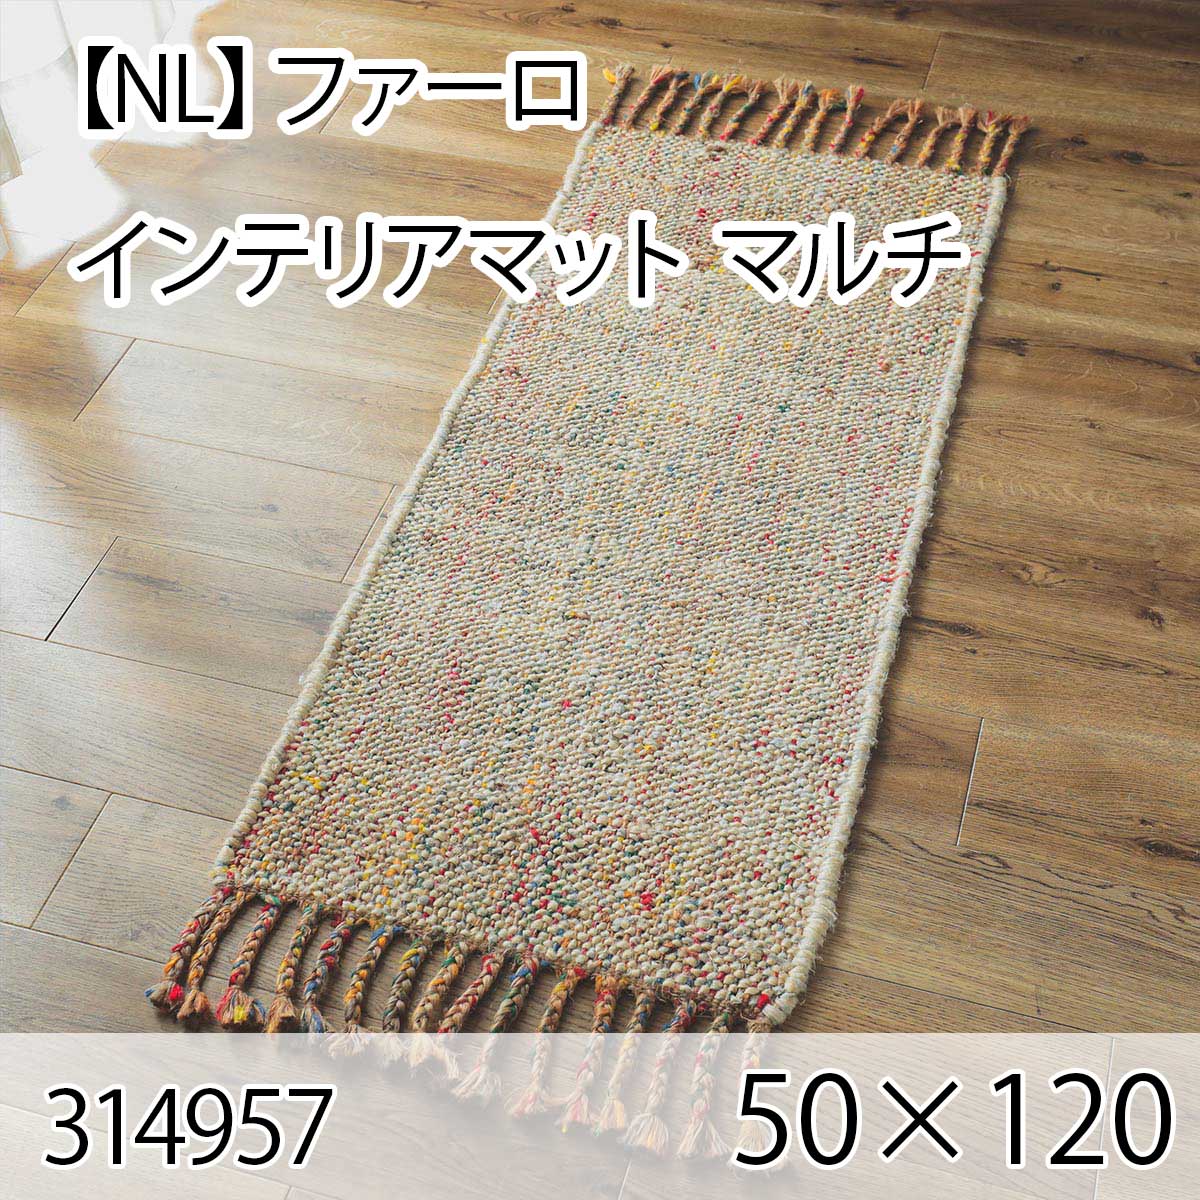 【NL】ファーロ  インテリアマット 50cmx120cm マルチ